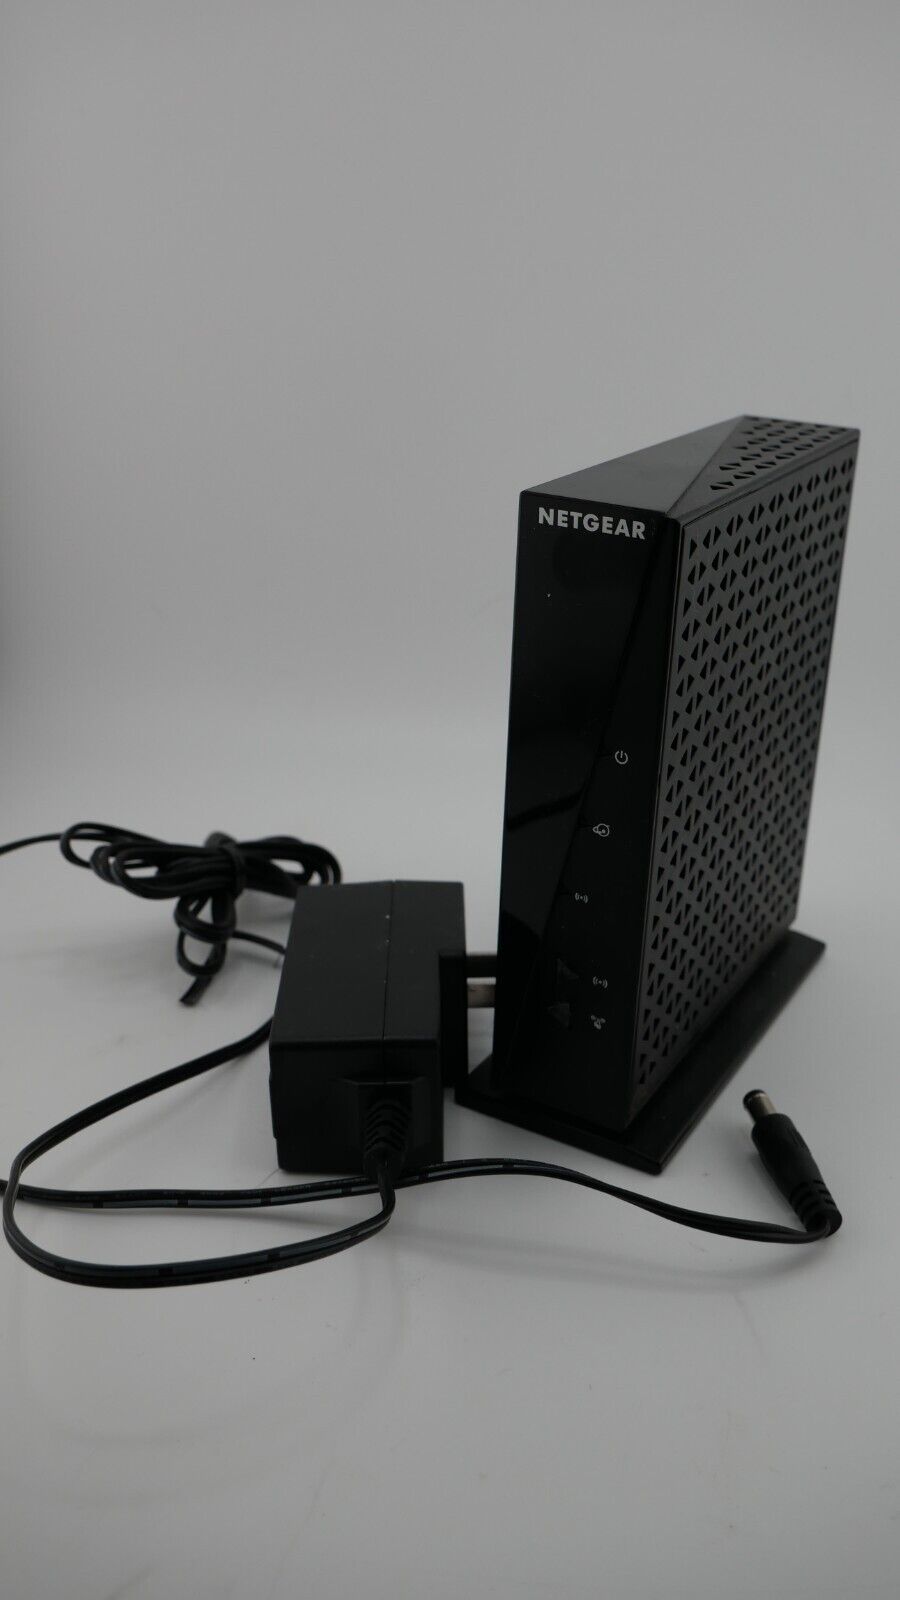 Netgear N300 WiFi Wireless Router Network WNR2000 v5